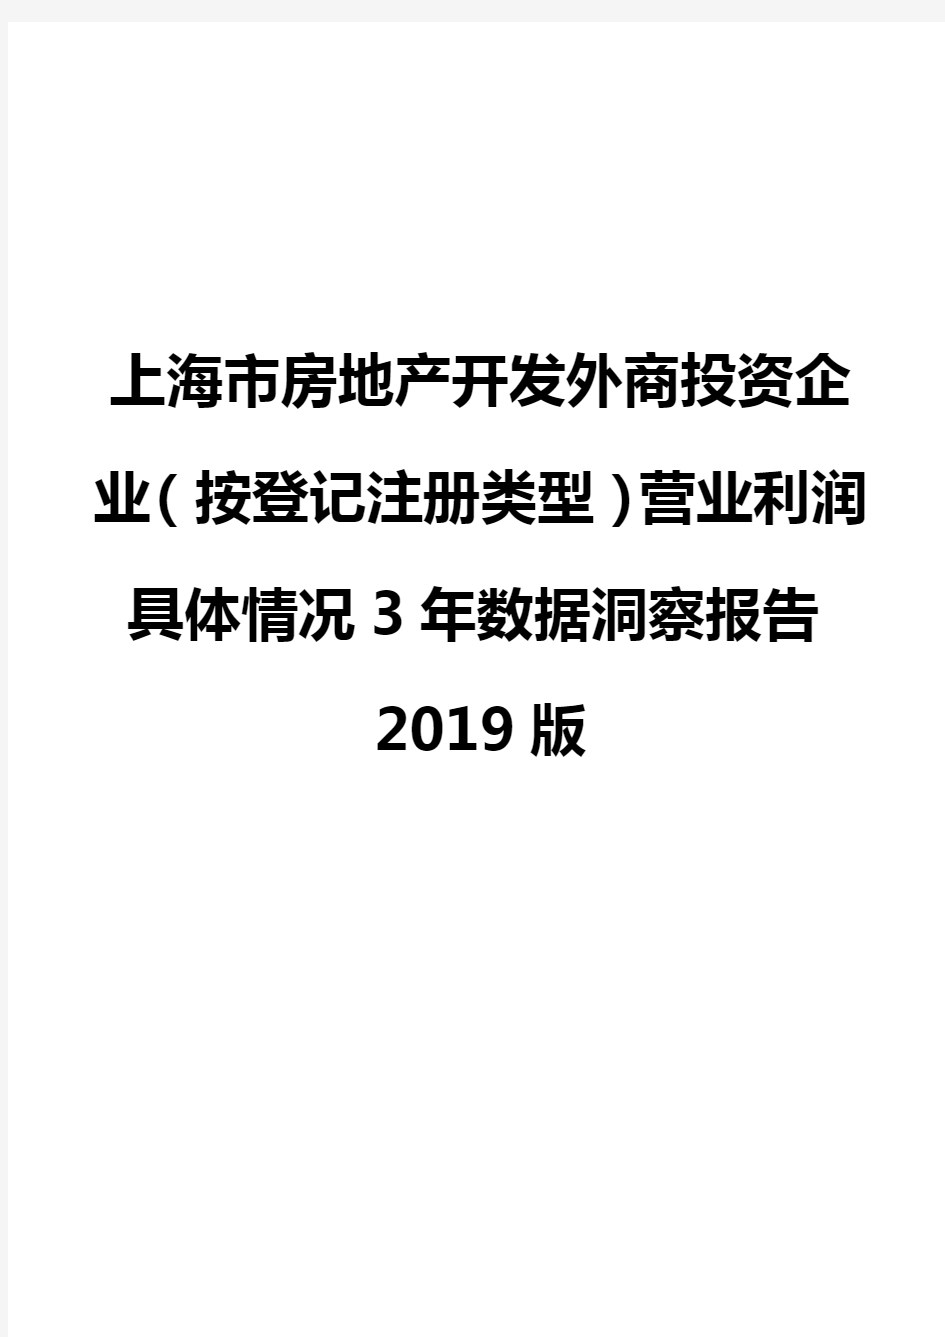 上海市房地产开发外商投资企业(按登记注册类型)营业利润具体情况3年数据洞察报告2019版